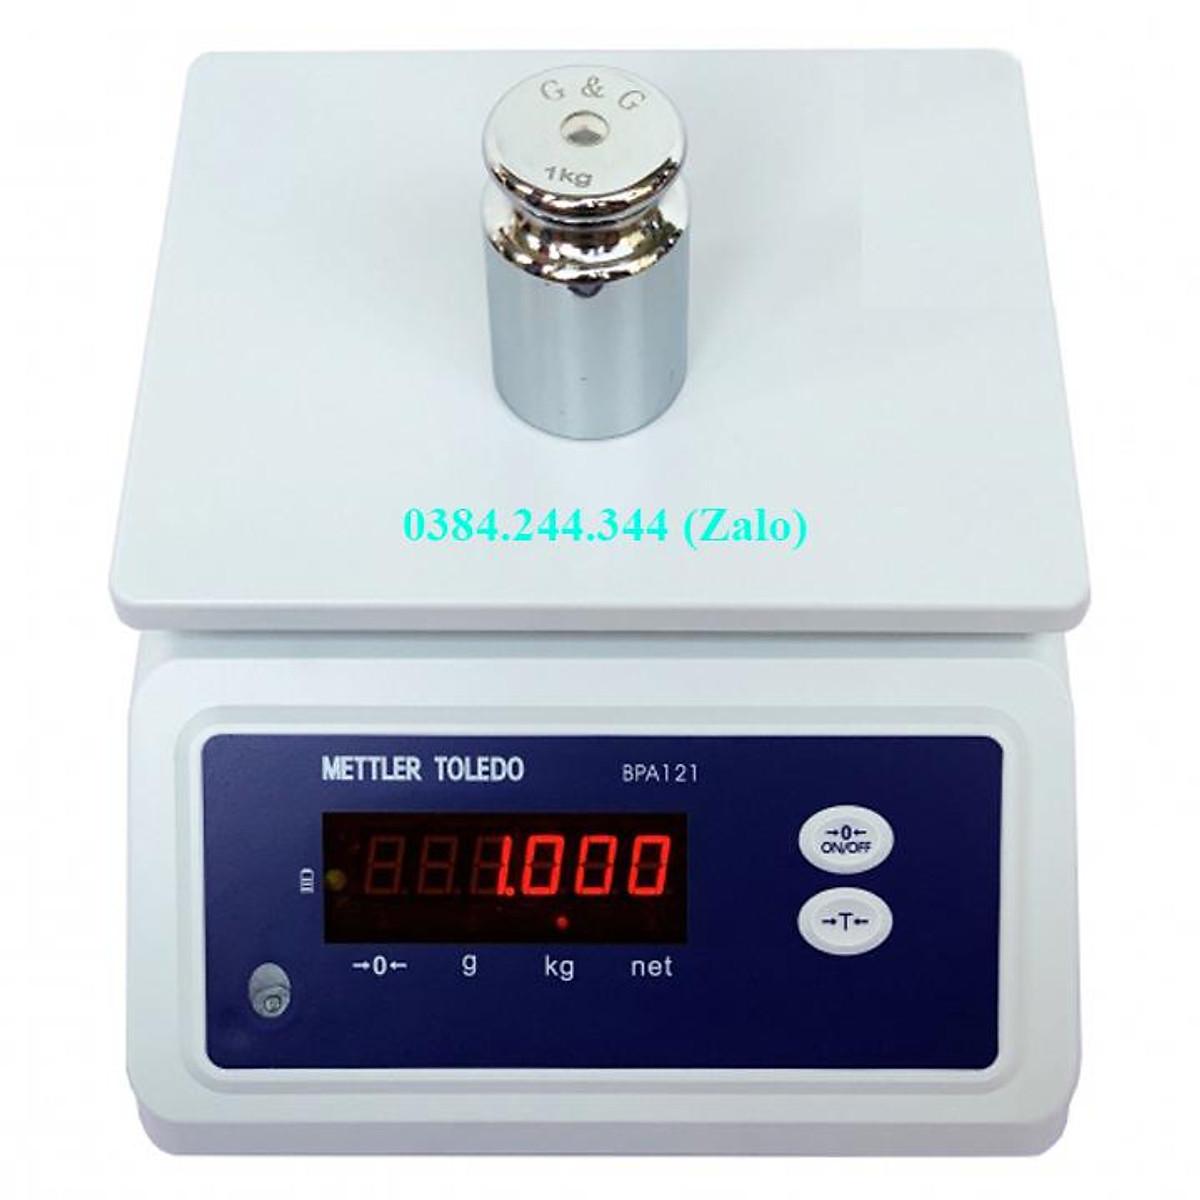 Cân điện tử chống nước Mettler Toledo BPA 121, mức cân tối đa 1.5kg, độ chia 0.2g, thiết kế chống nước tốt nhất